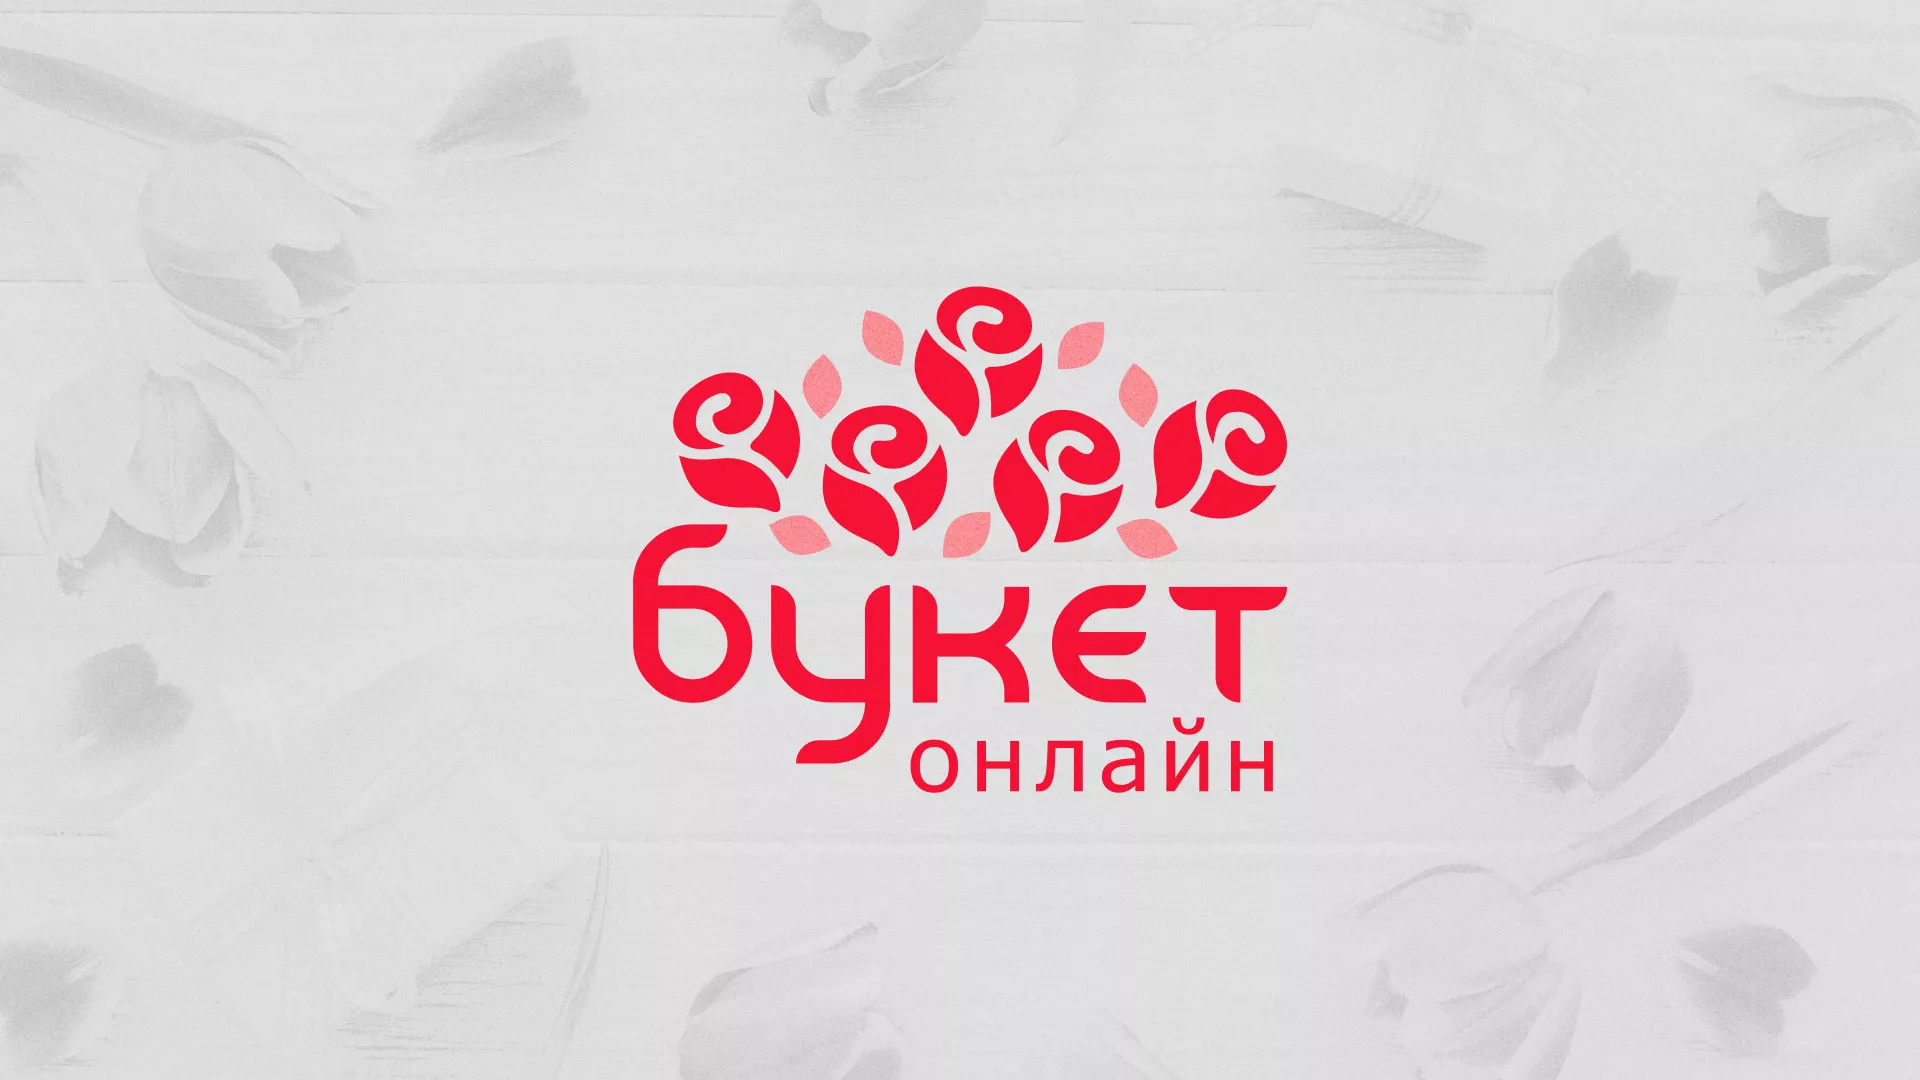 Создание интернет-магазина «Букет-онлайн» по цветам в Лесосибирске